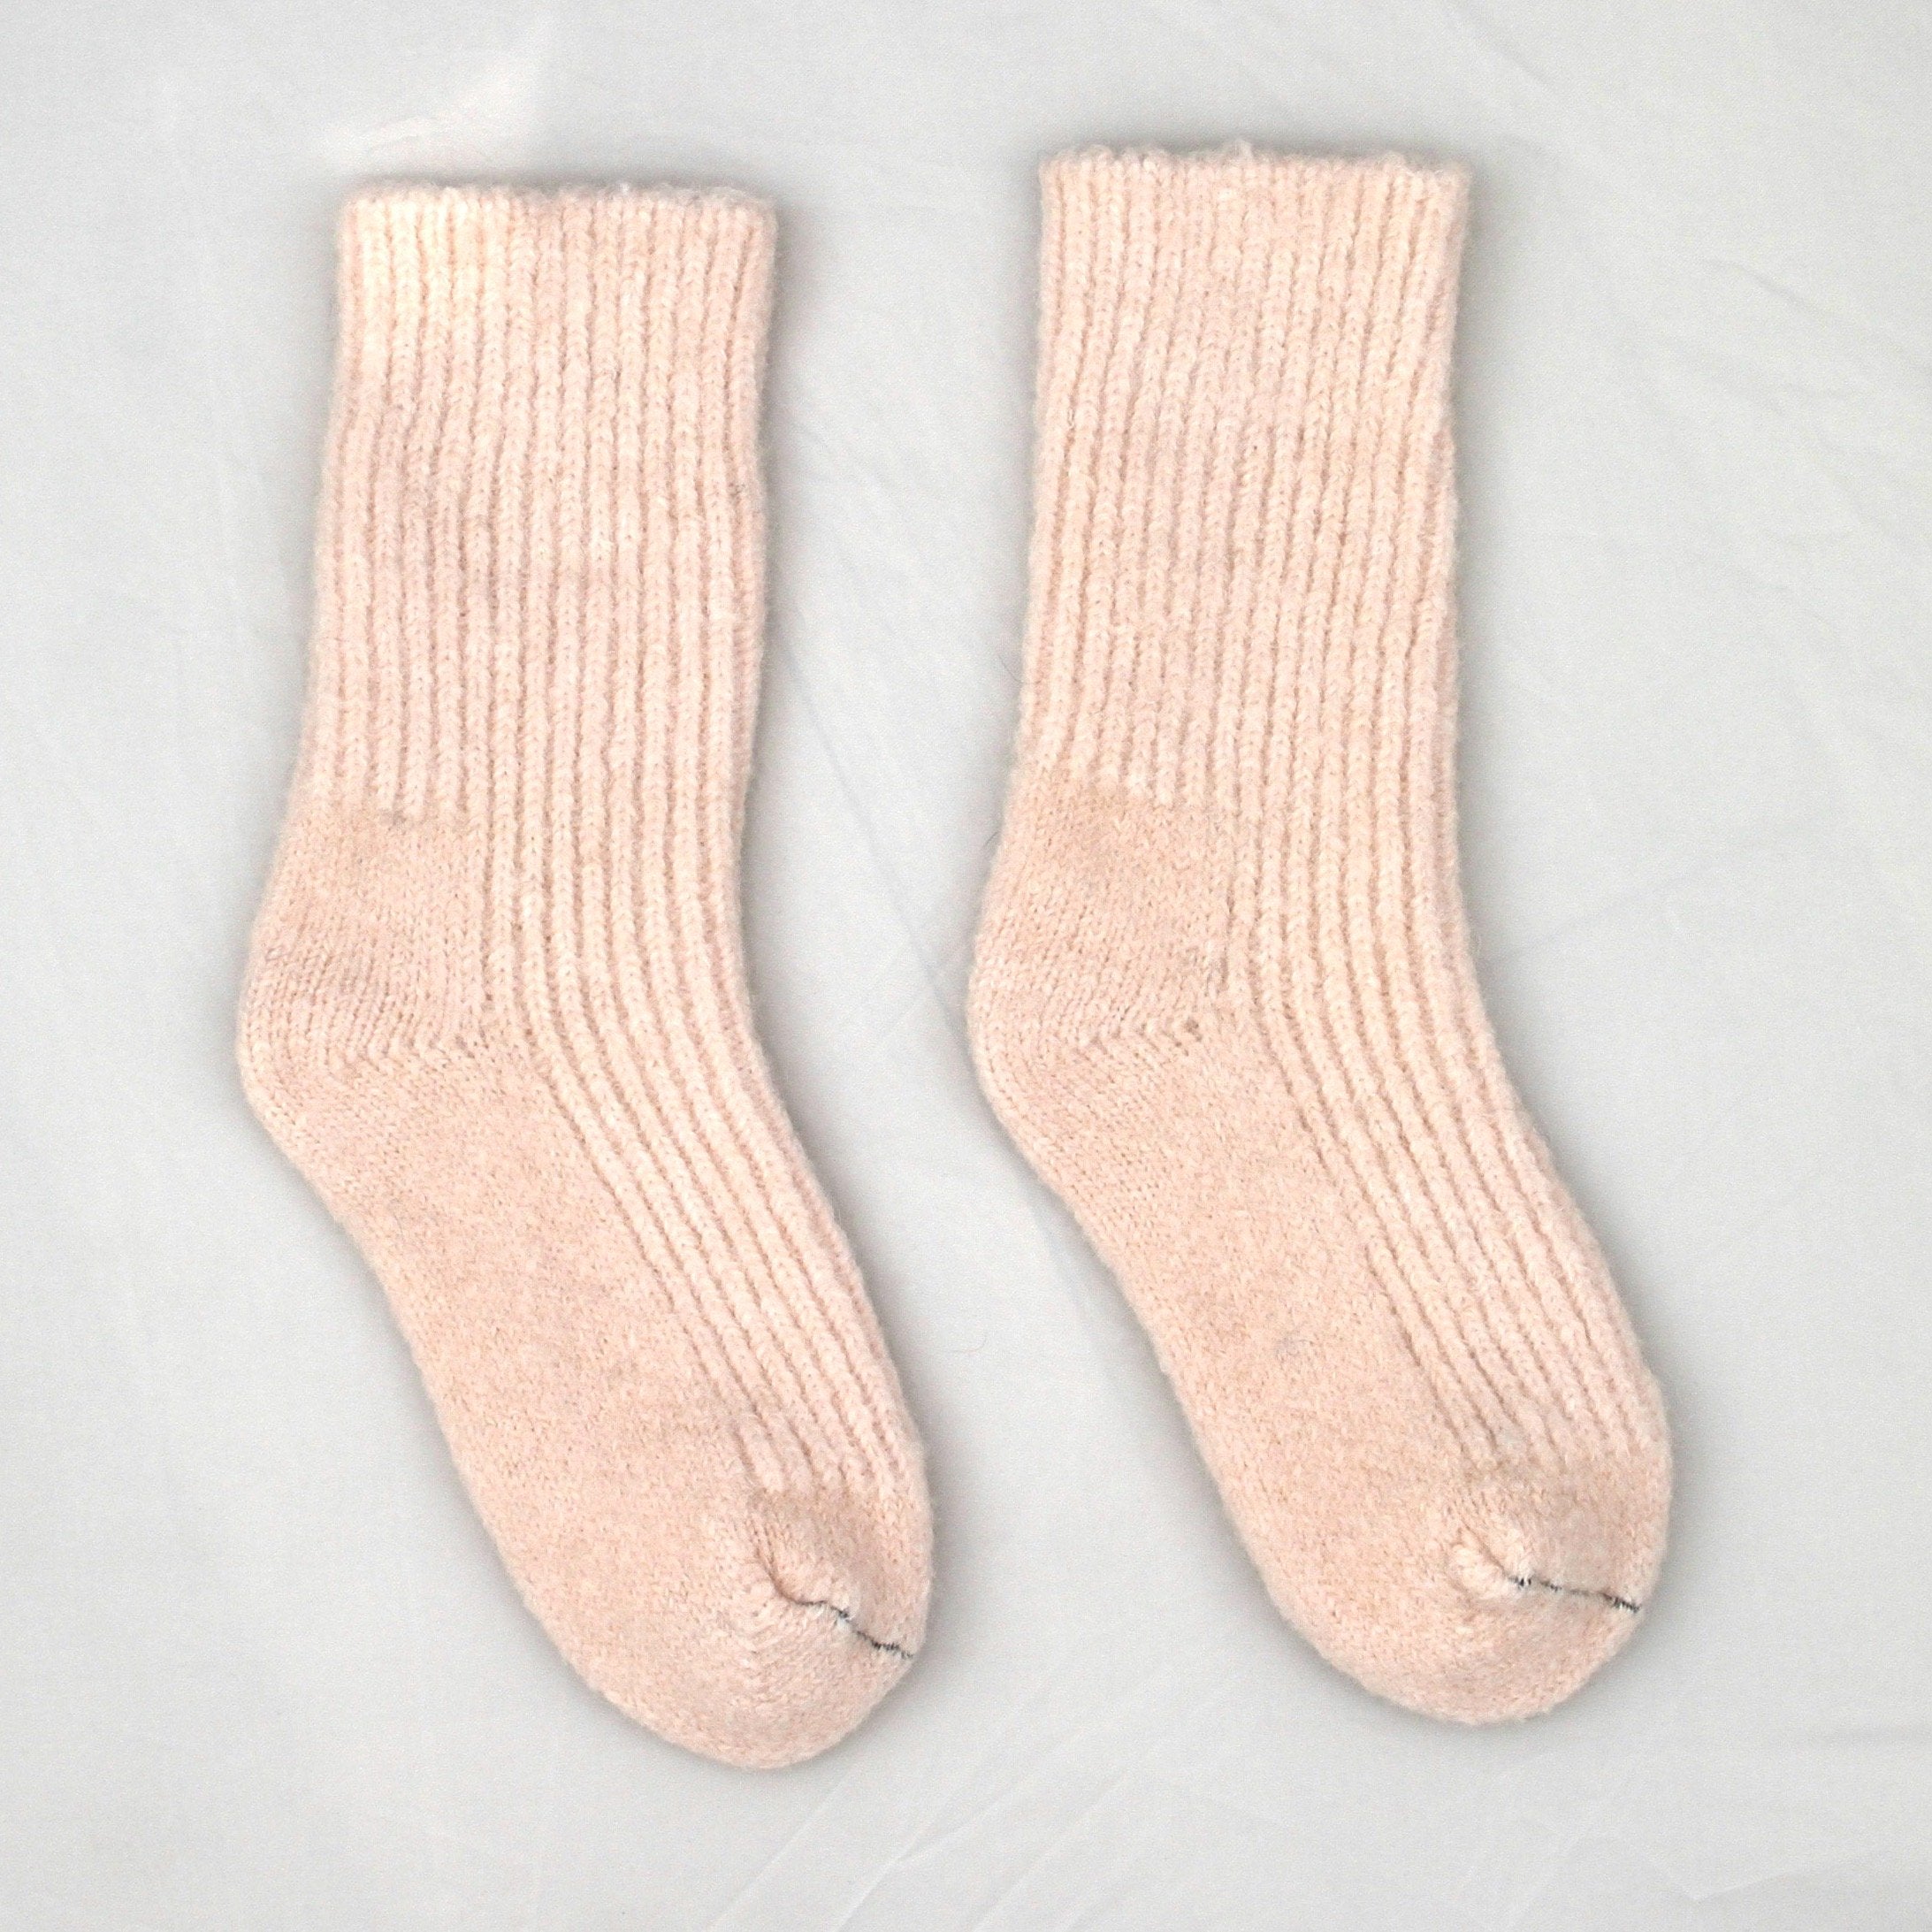 Kapeka Alpaca slipper socks - aotea nz